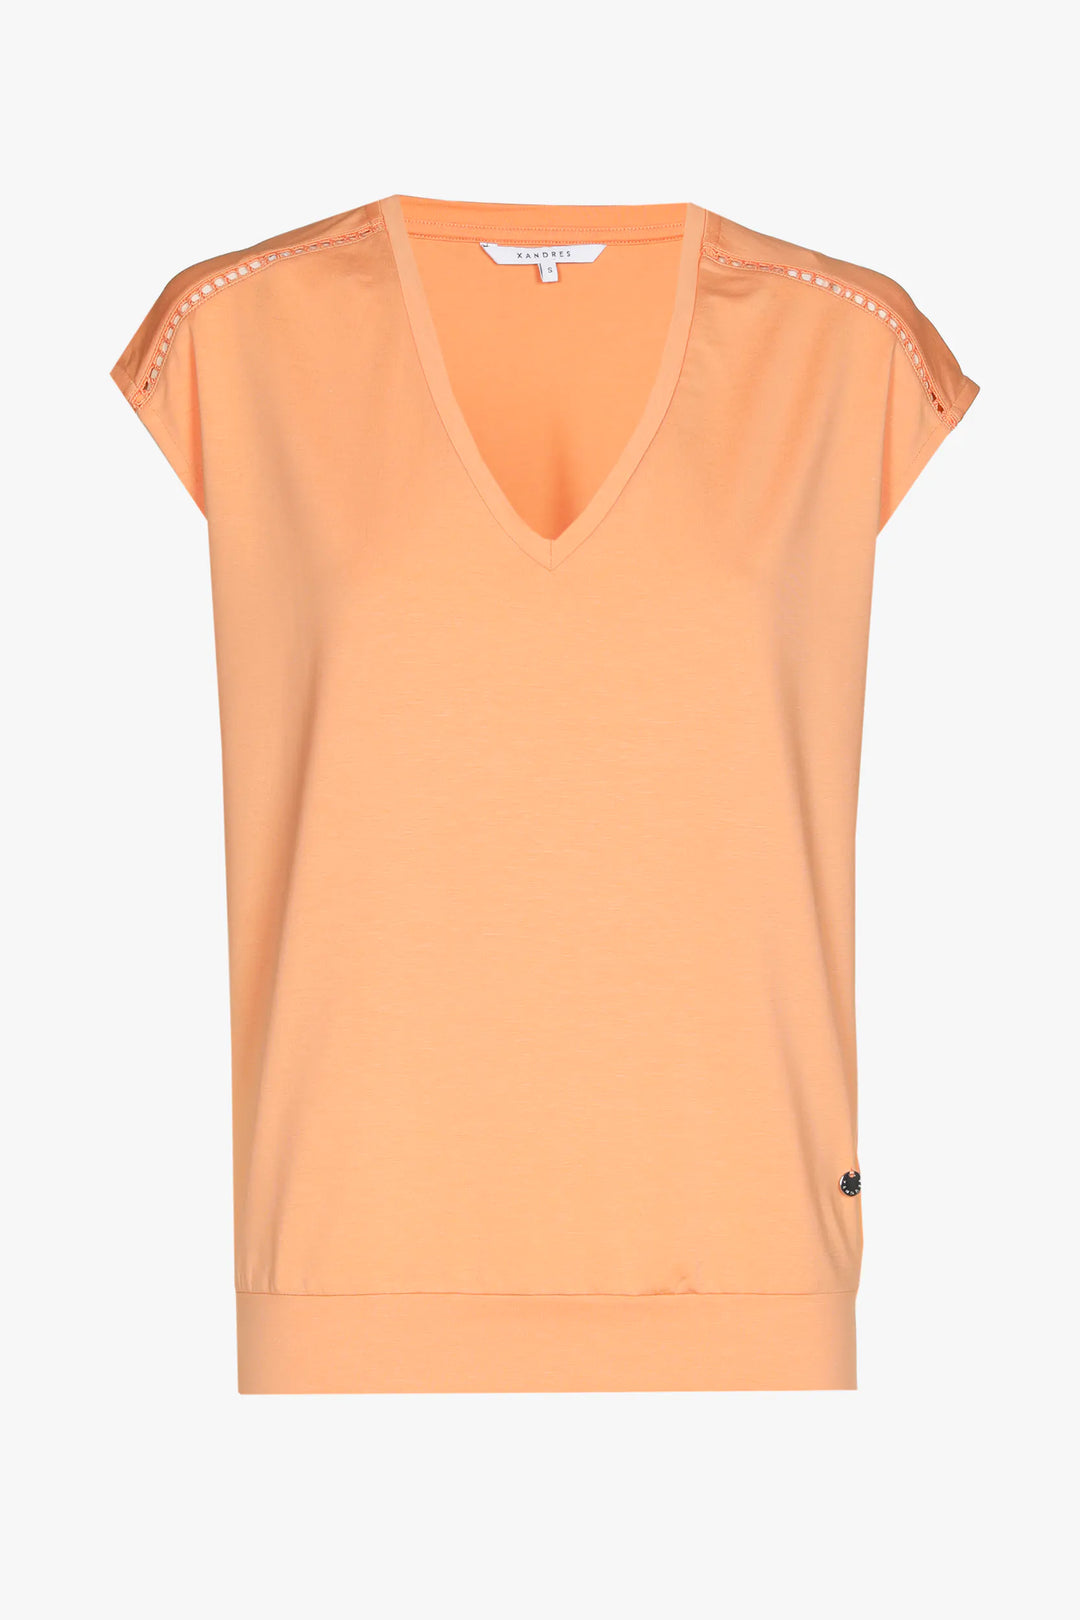 peach t-shirt met kapmouw - xandres - - grote maten - dameskleding - kledingwinkel - herent - leuven